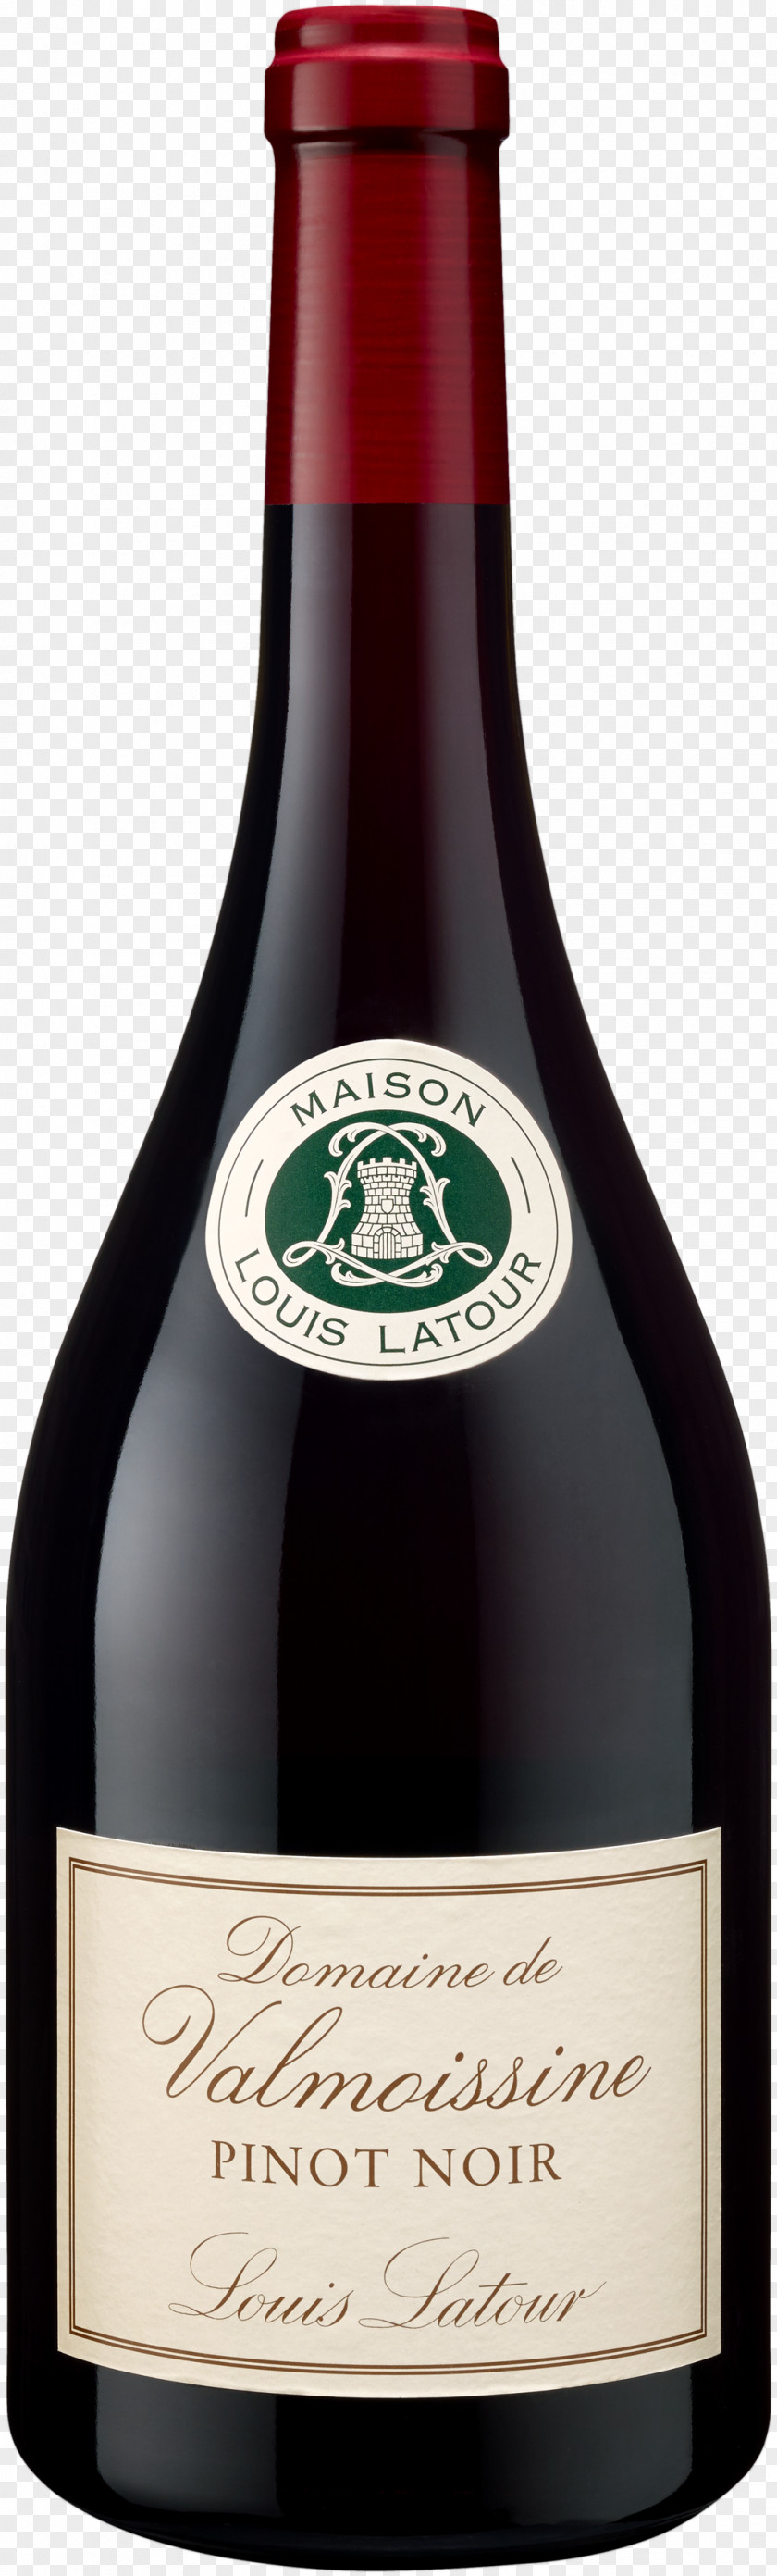 Pinot Noir Maison Louis Latour Burgundy Wine Domaine De Valmoissine PNG